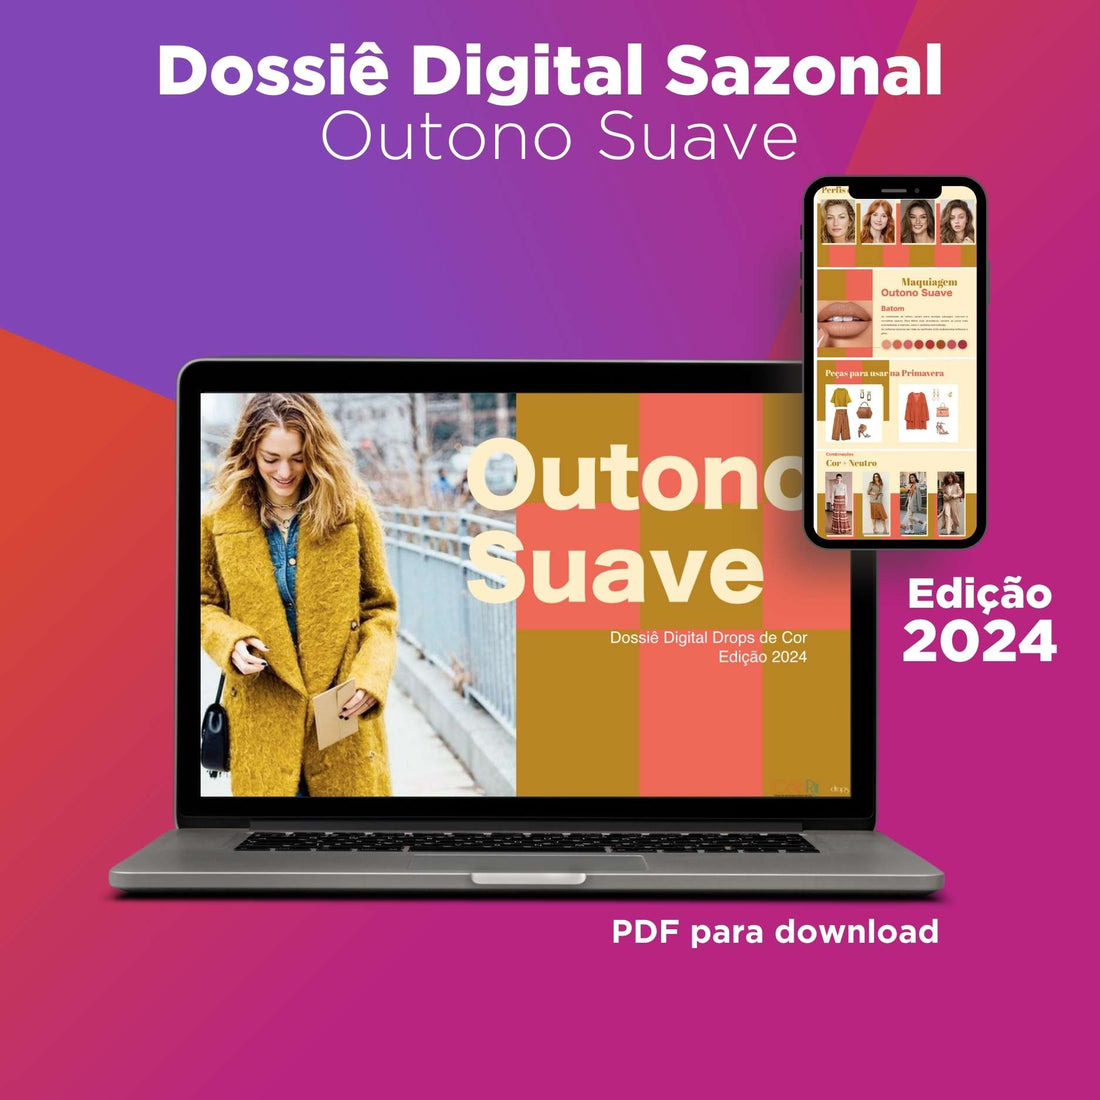 Dossier Digital de Temporada - Otoño Suave - Edición 2024